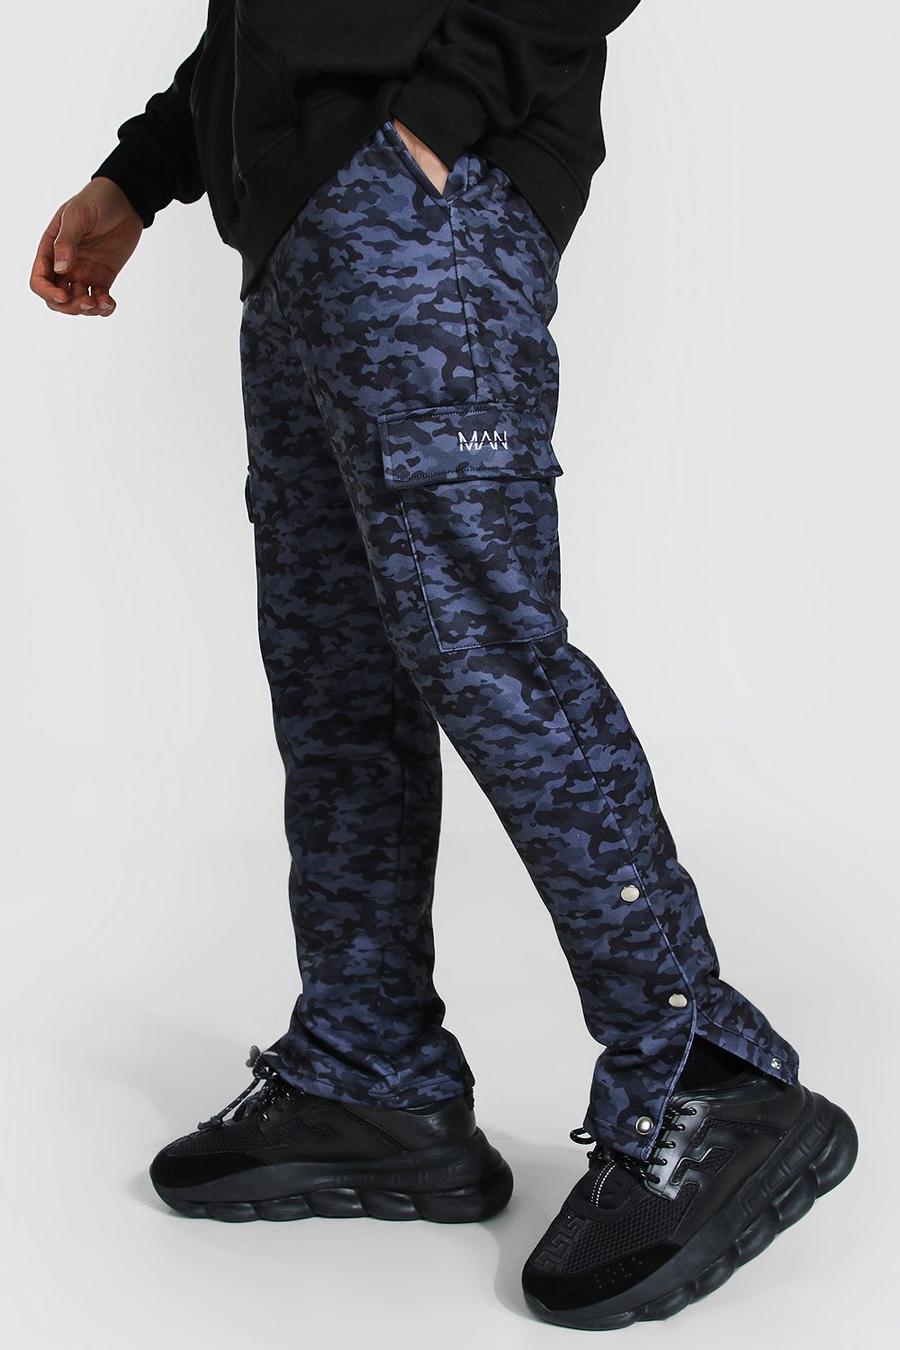 שחור מכנסי ריצה קרגו בגזרה צרה עם הדפס צבעי הסוואה, תיקתקים וכיתוב Man image number 1